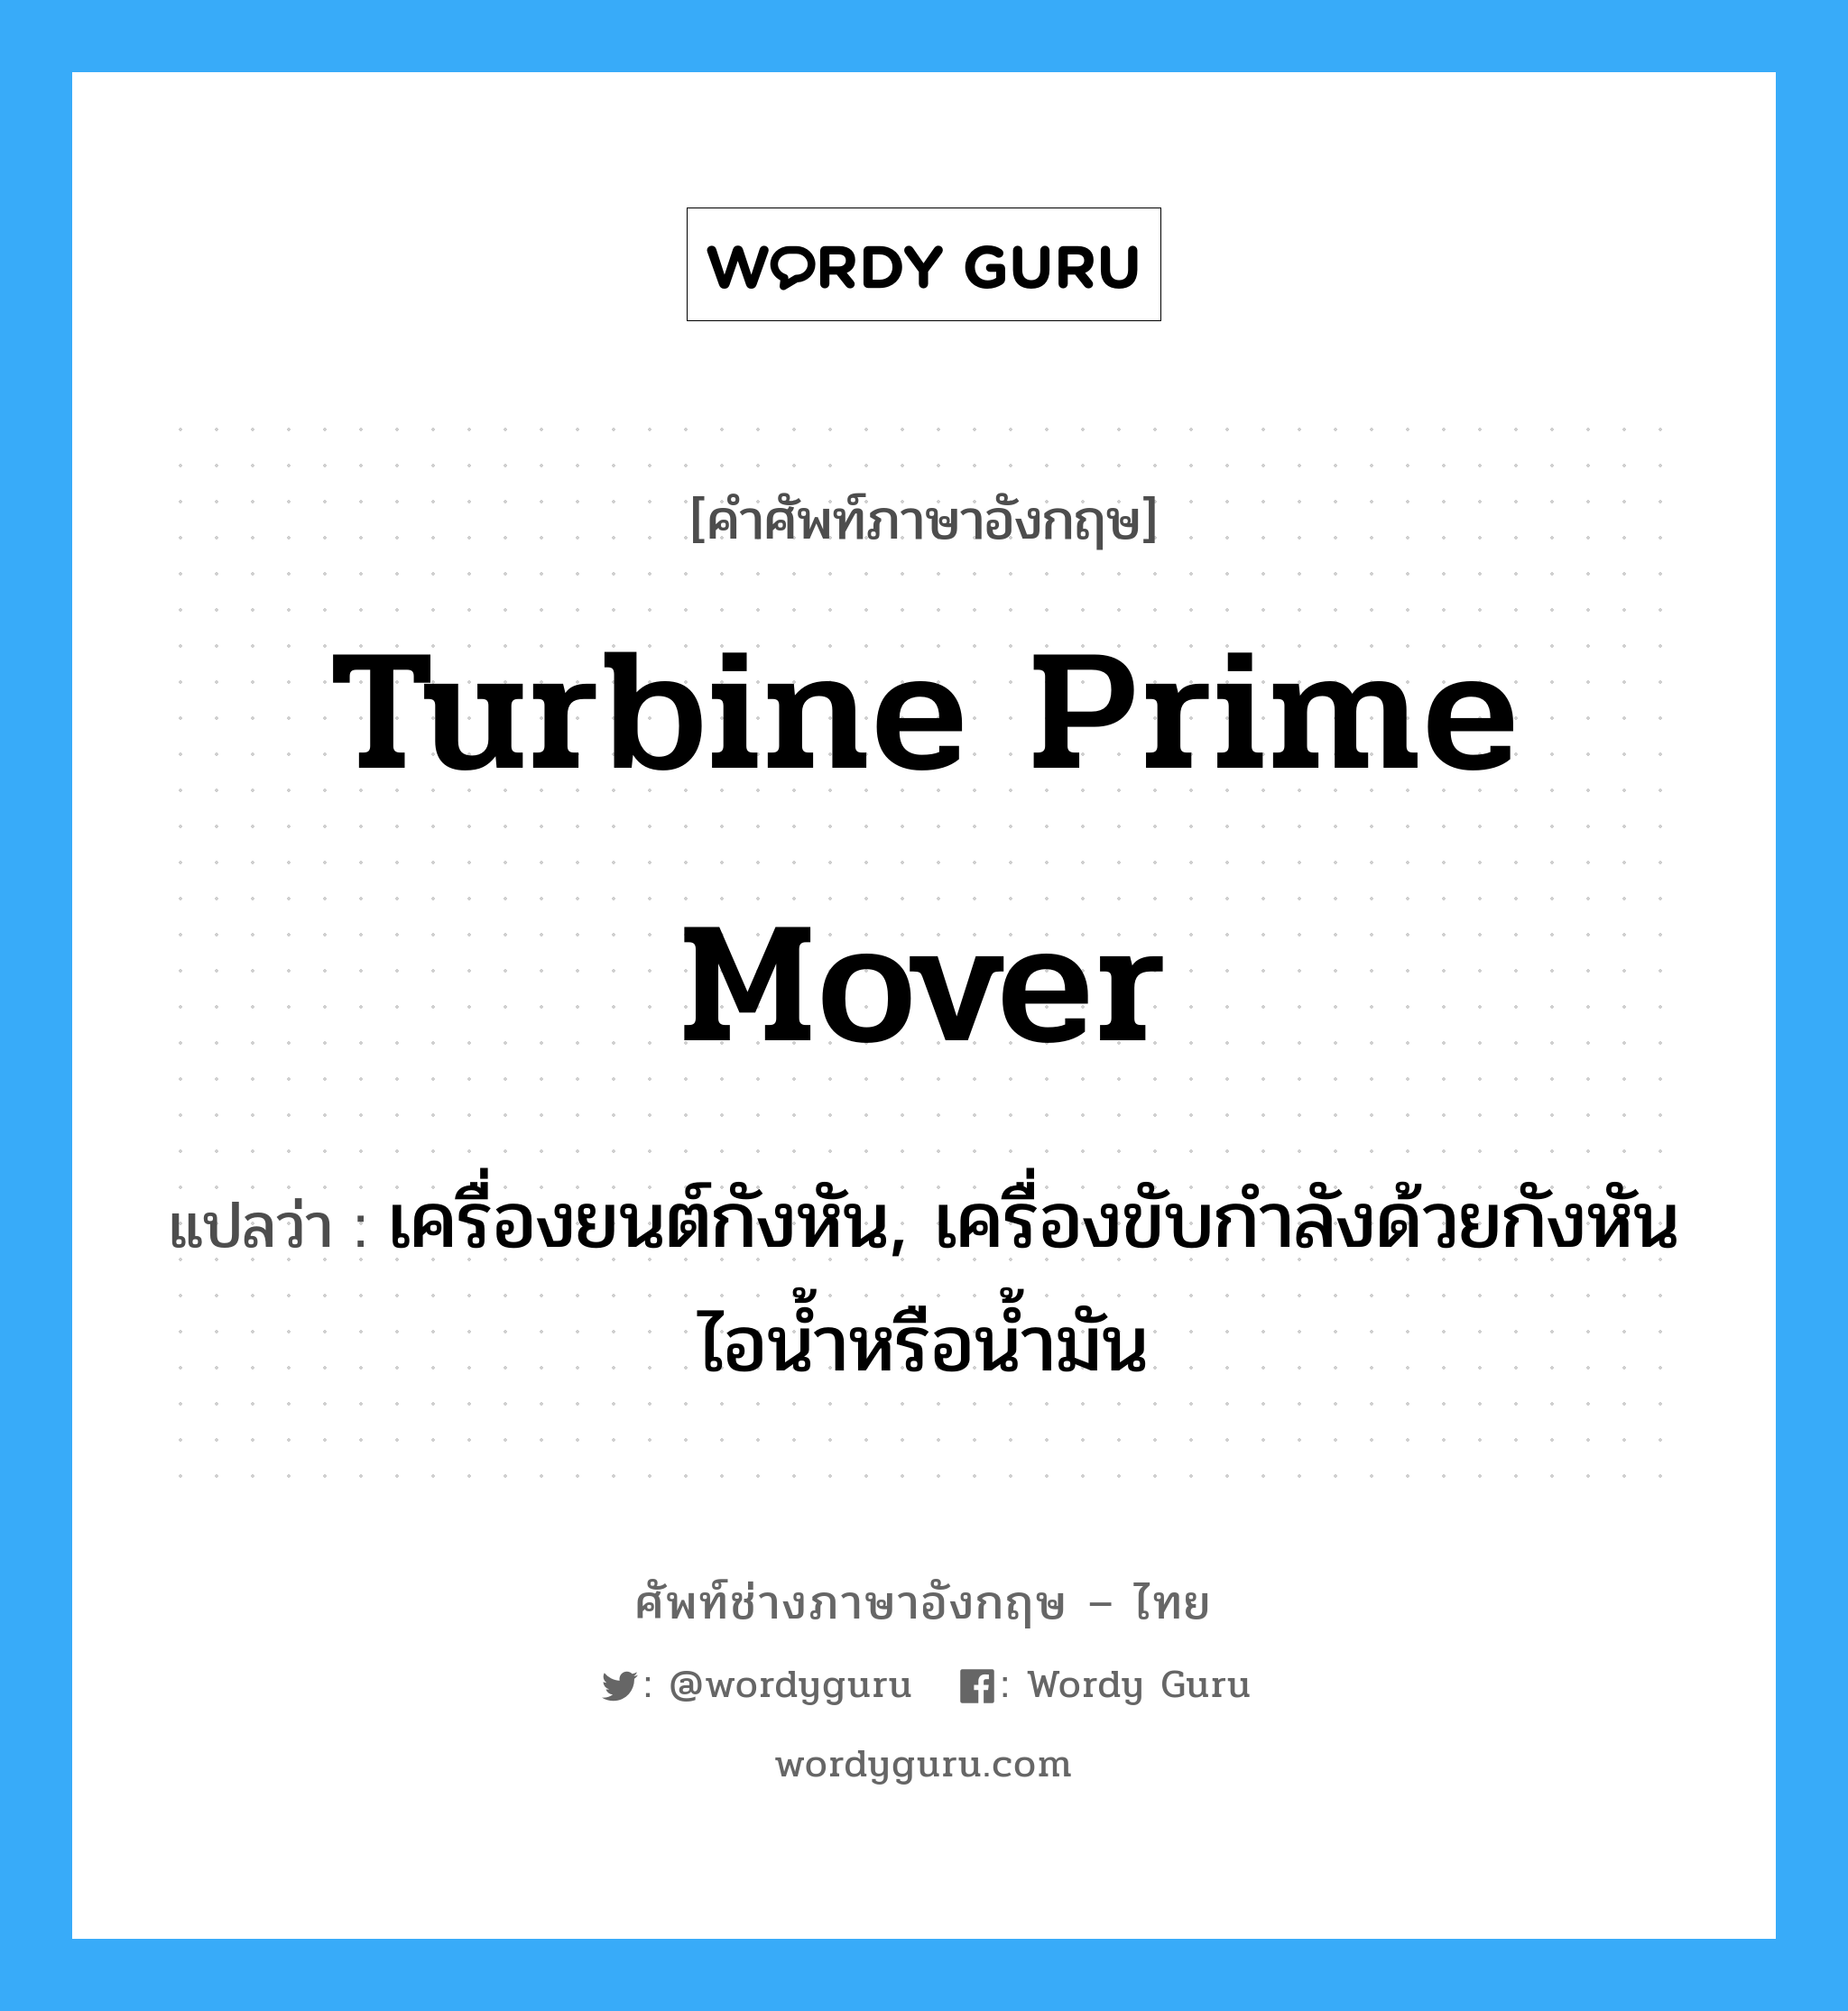 turbine prime mover แปลว่า?, คำศัพท์ช่างภาษาอังกฤษ - ไทย turbine prime mover คำศัพท์ภาษาอังกฤษ turbine prime mover แปลว่า เครื่องยนต์กังหัน, เครื่องขับกำลังด้วยกังหันไอน้ำหรือน้ำมัน